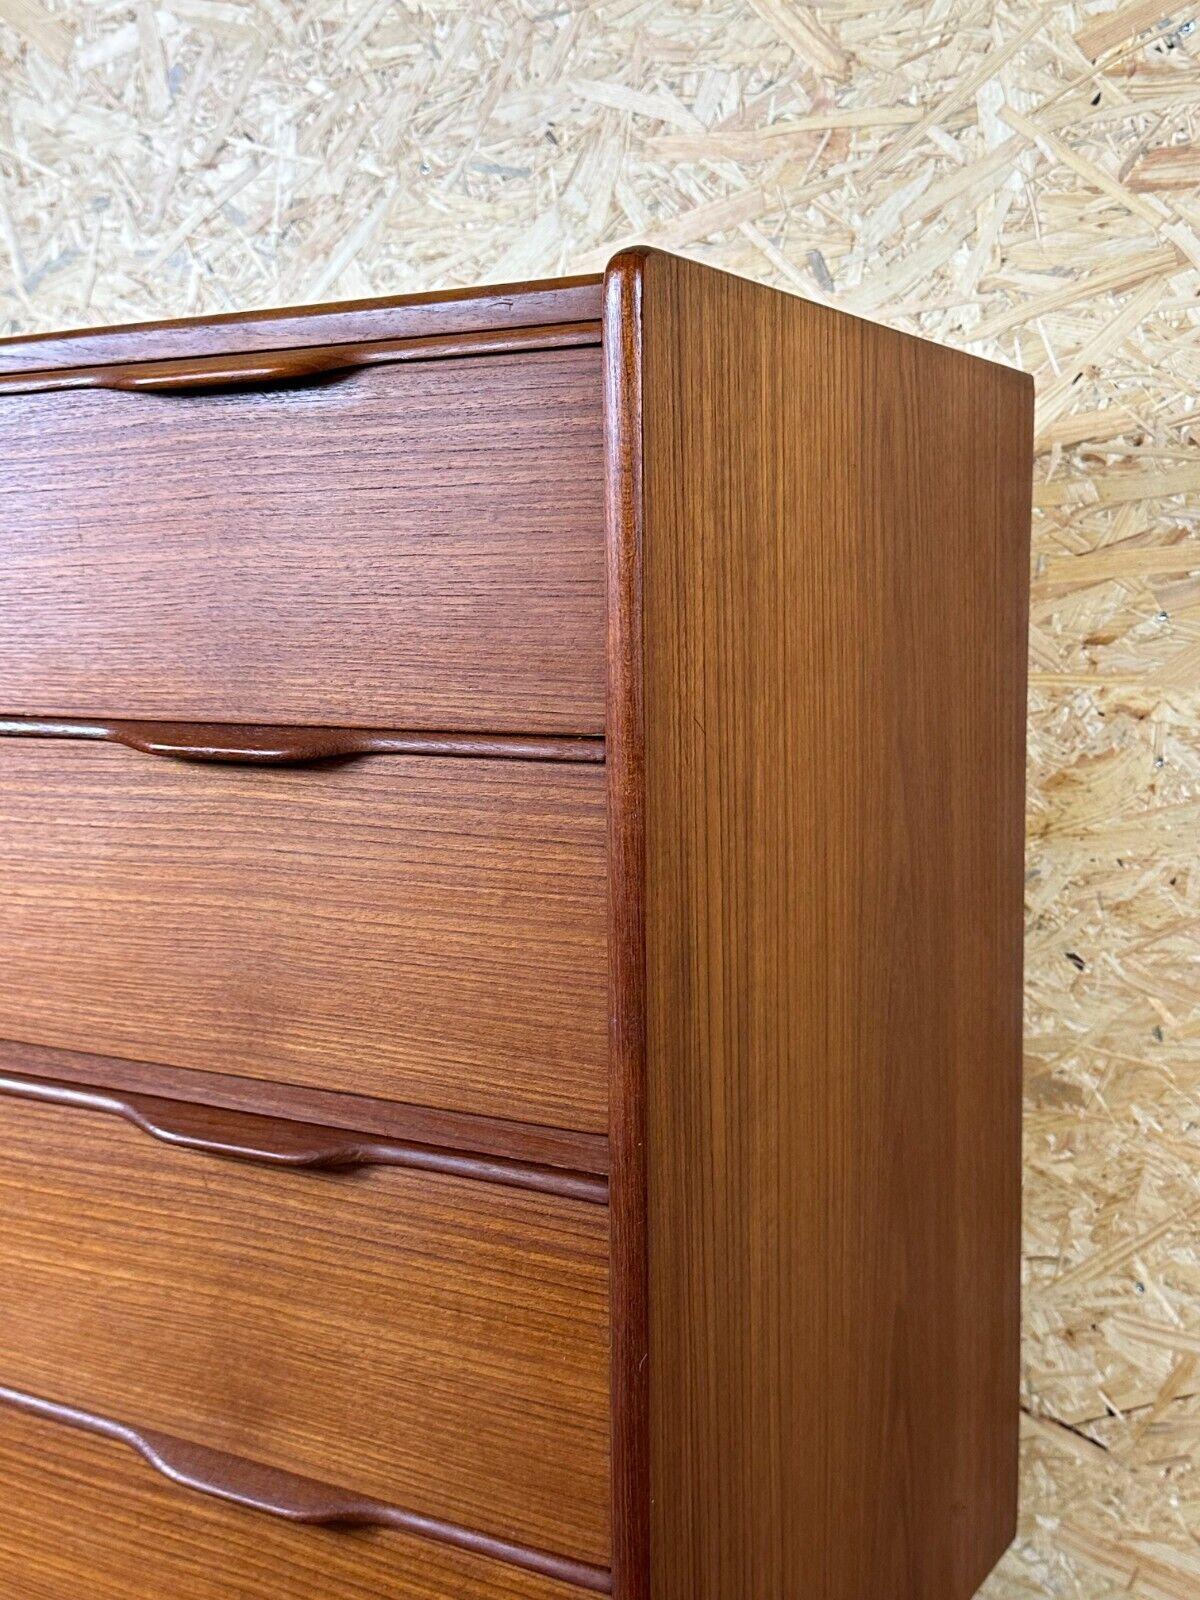 60s 70s teak sideboard chest of drawers cabinet Danish Modern Design Denmark 2